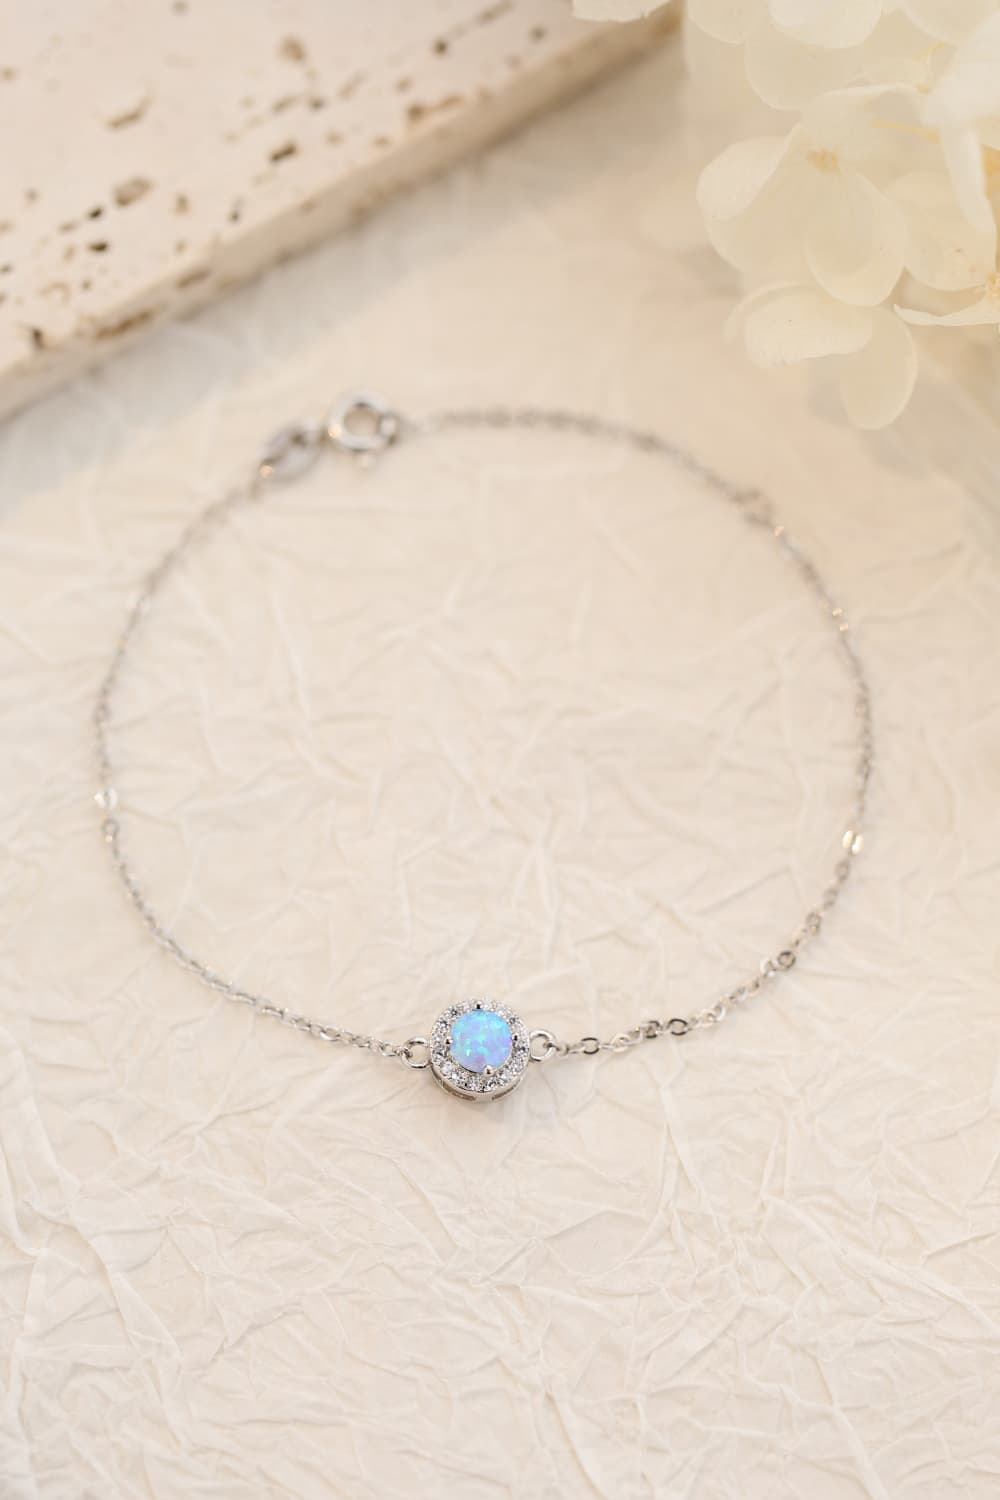 Love You Too Much Opal Bracelet - Women’s Jewelry - Bracelets - 2 - 2024